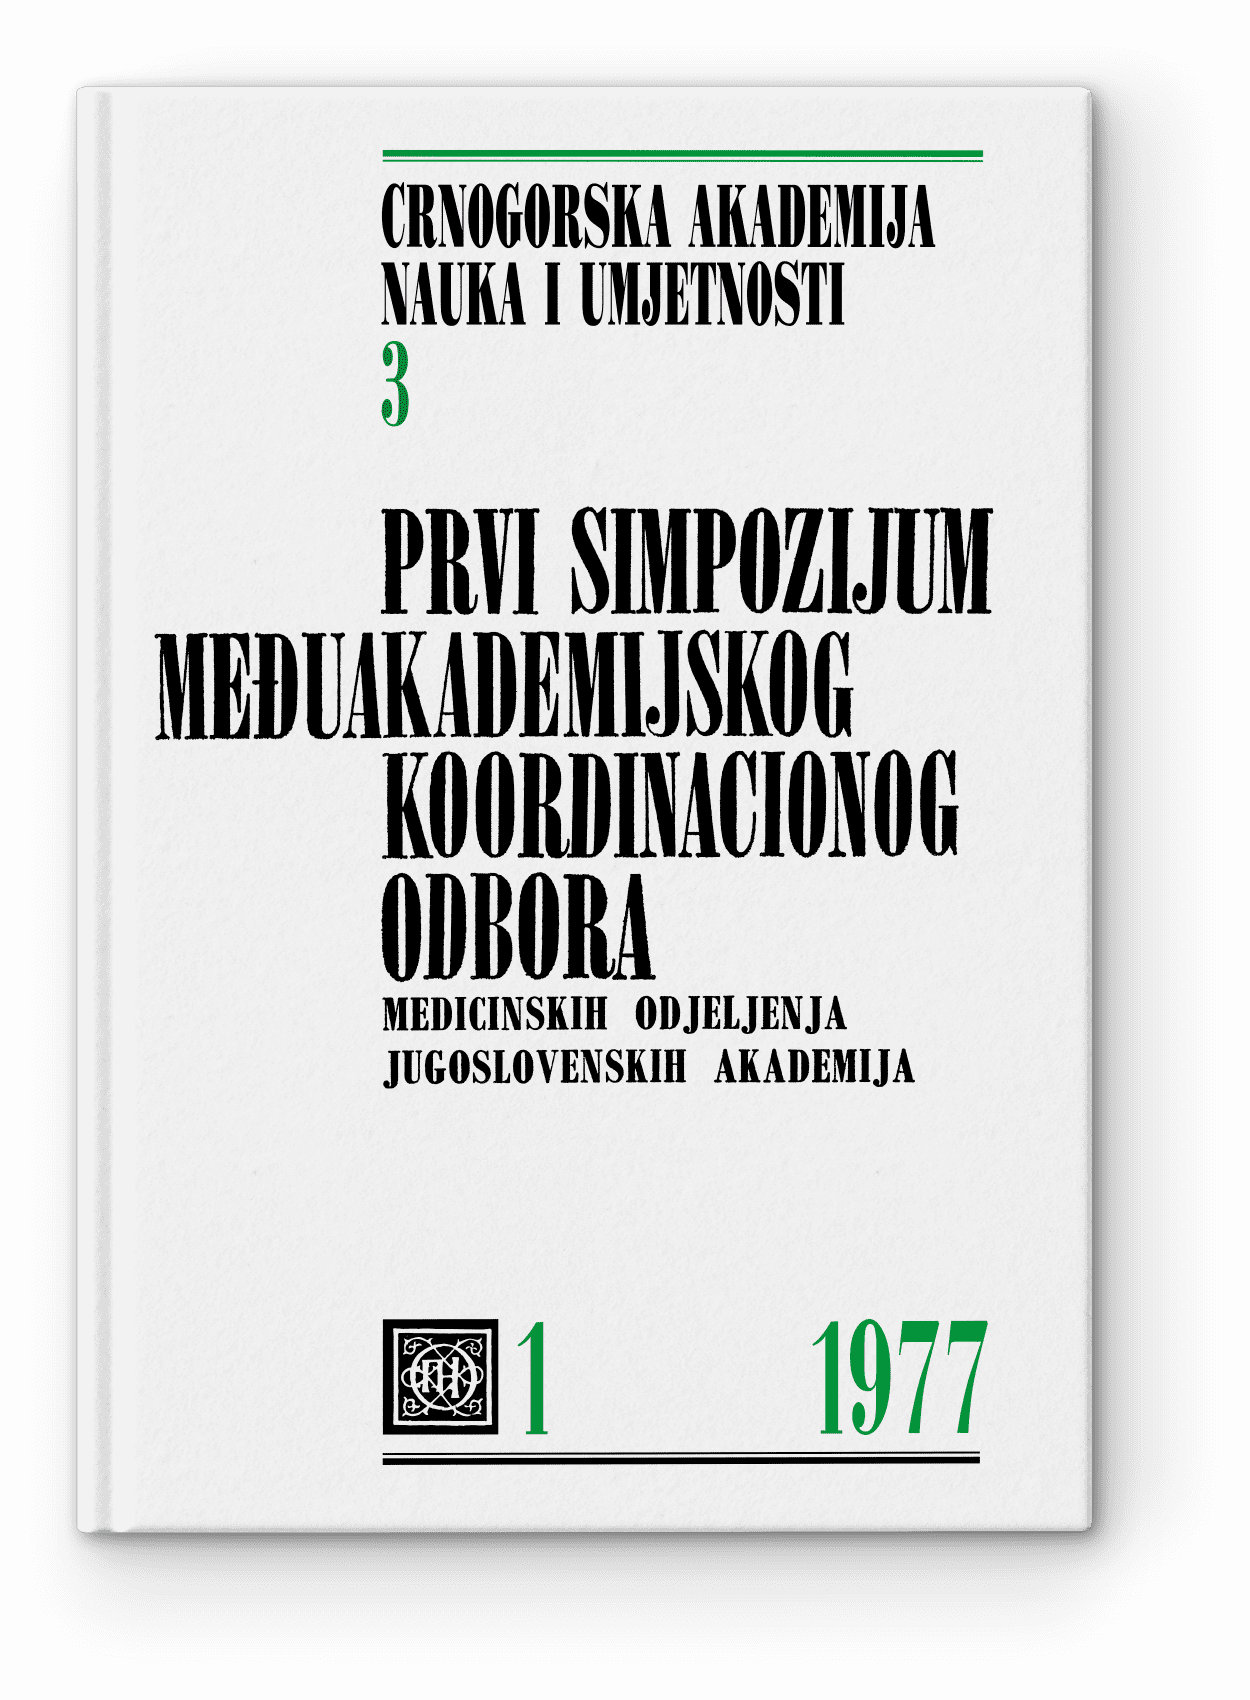 Prvi simpozijum Međuakademijskog koordinaciono odbora medicinskih odjeljenja jugoslovenskih akademija